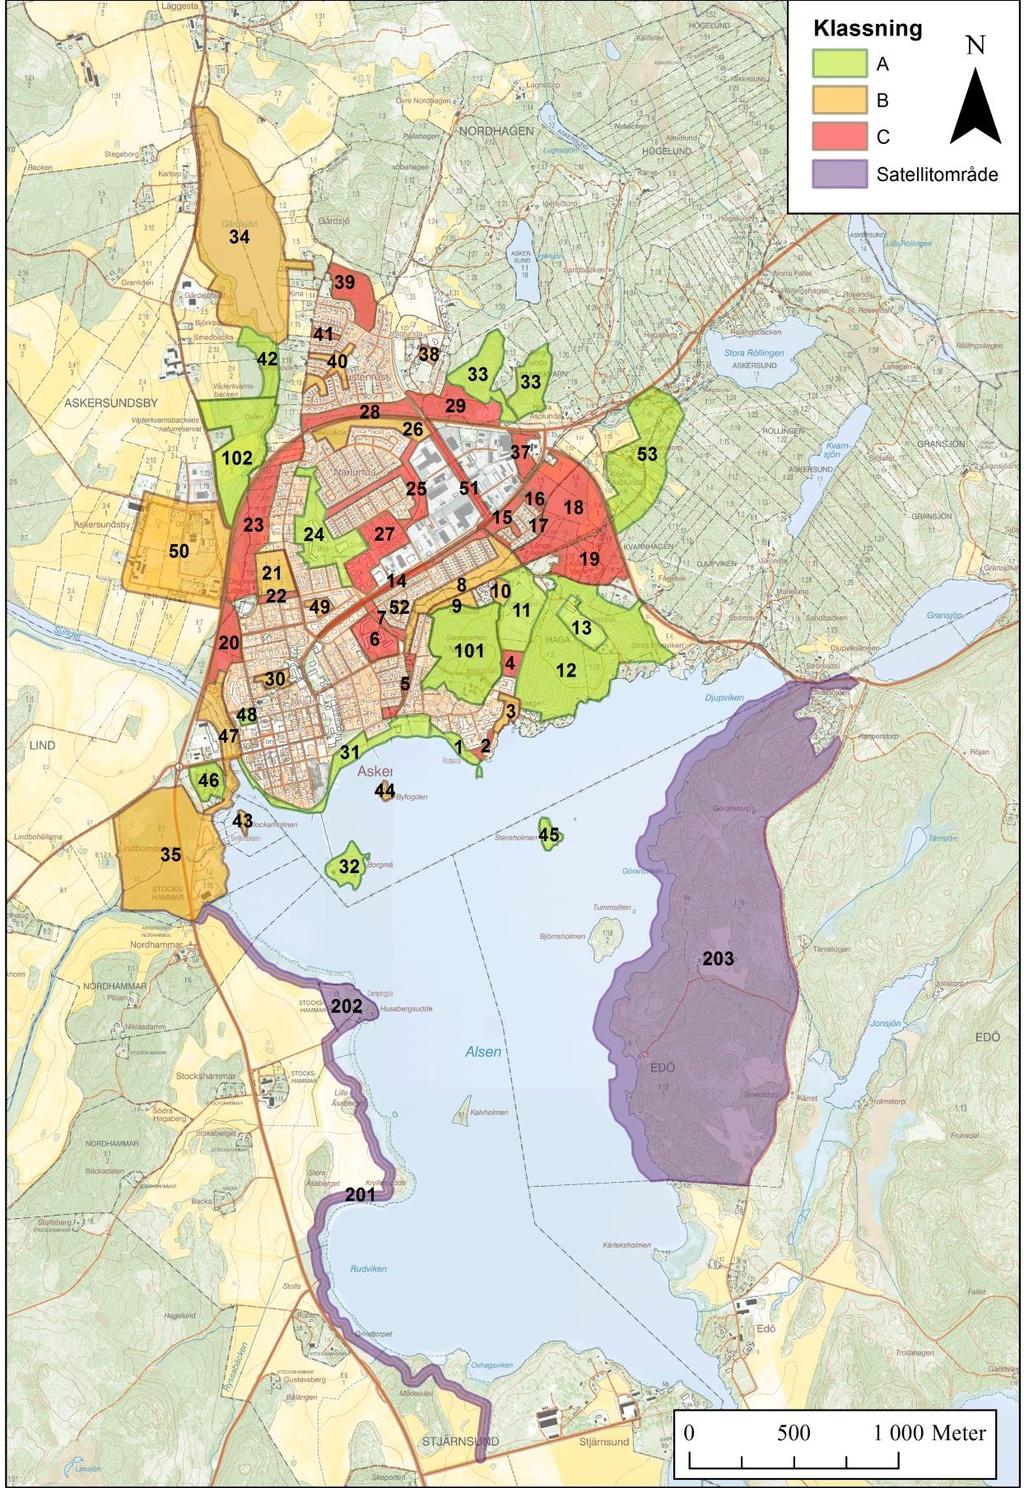 Askersund Områdesklassningar, övergripande Här visas klassningen som gjorts, av samtliga inventerade områden i Askersund.